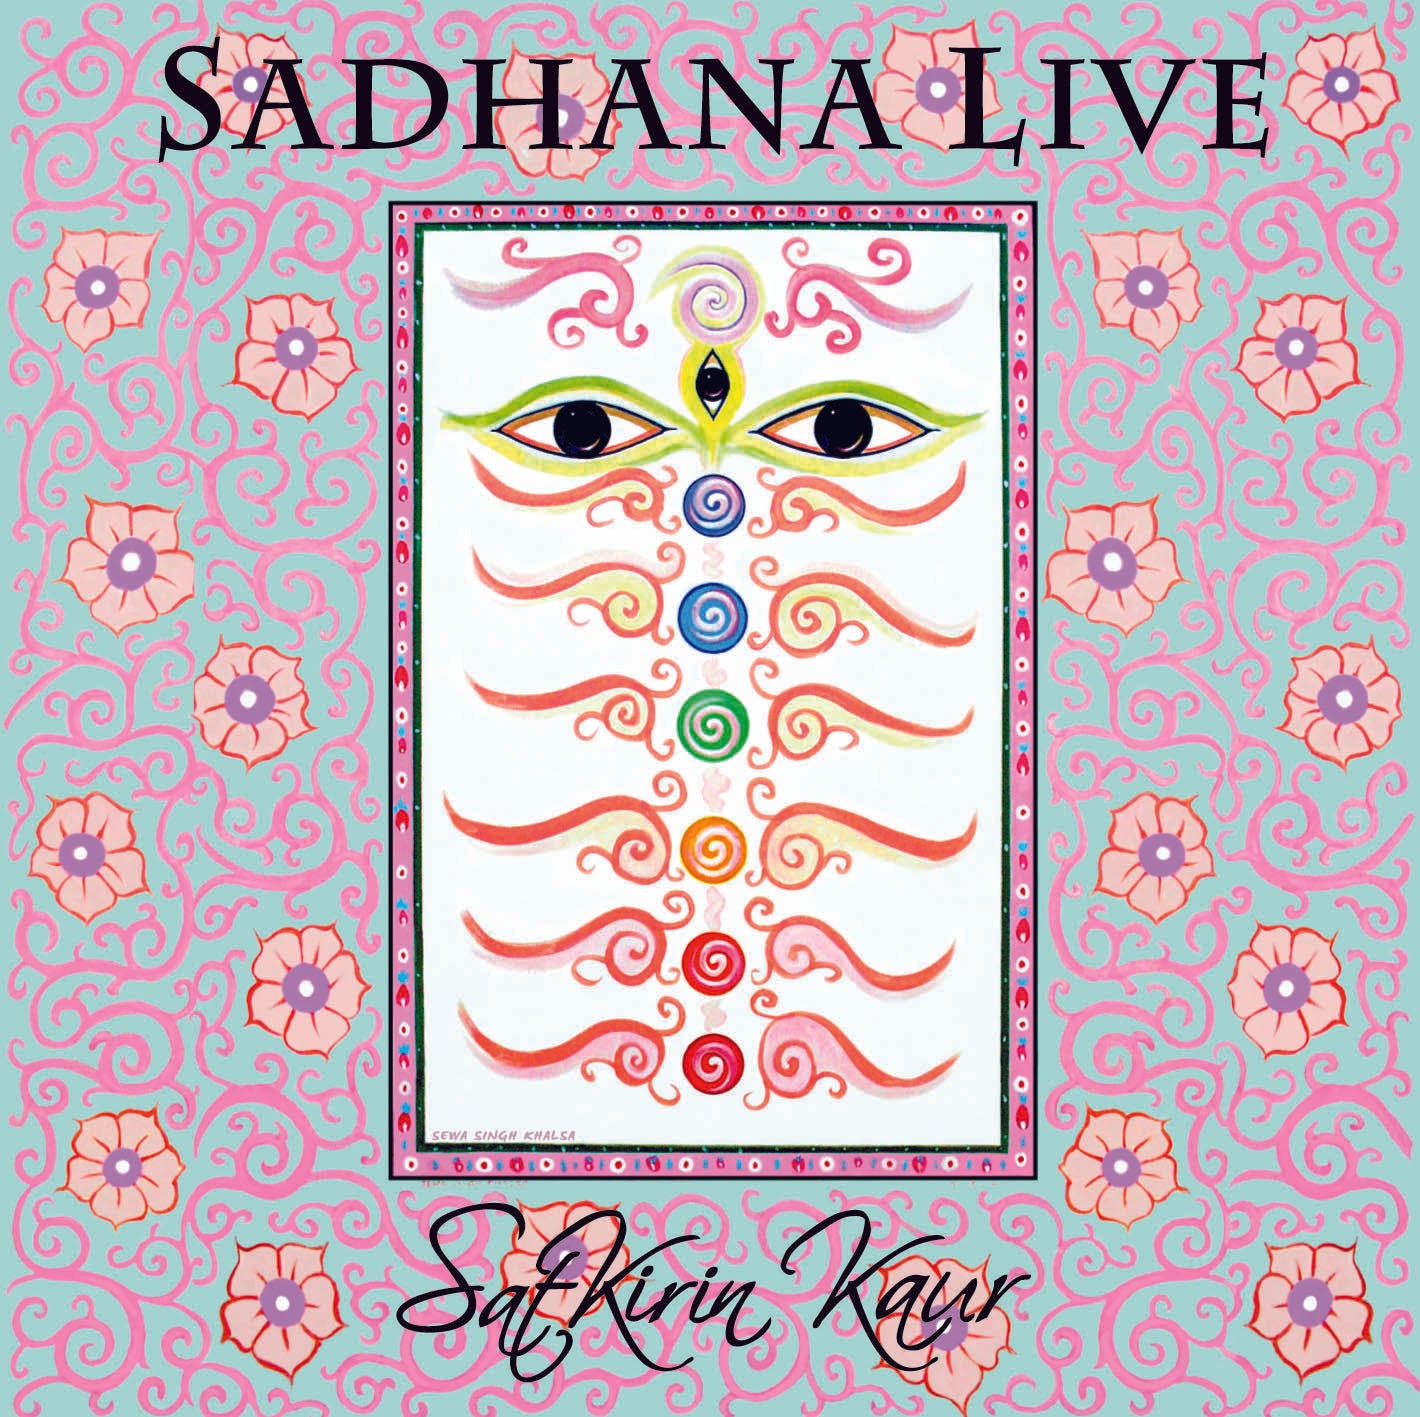 Sadhana Live - Satkirin Kaur komplett